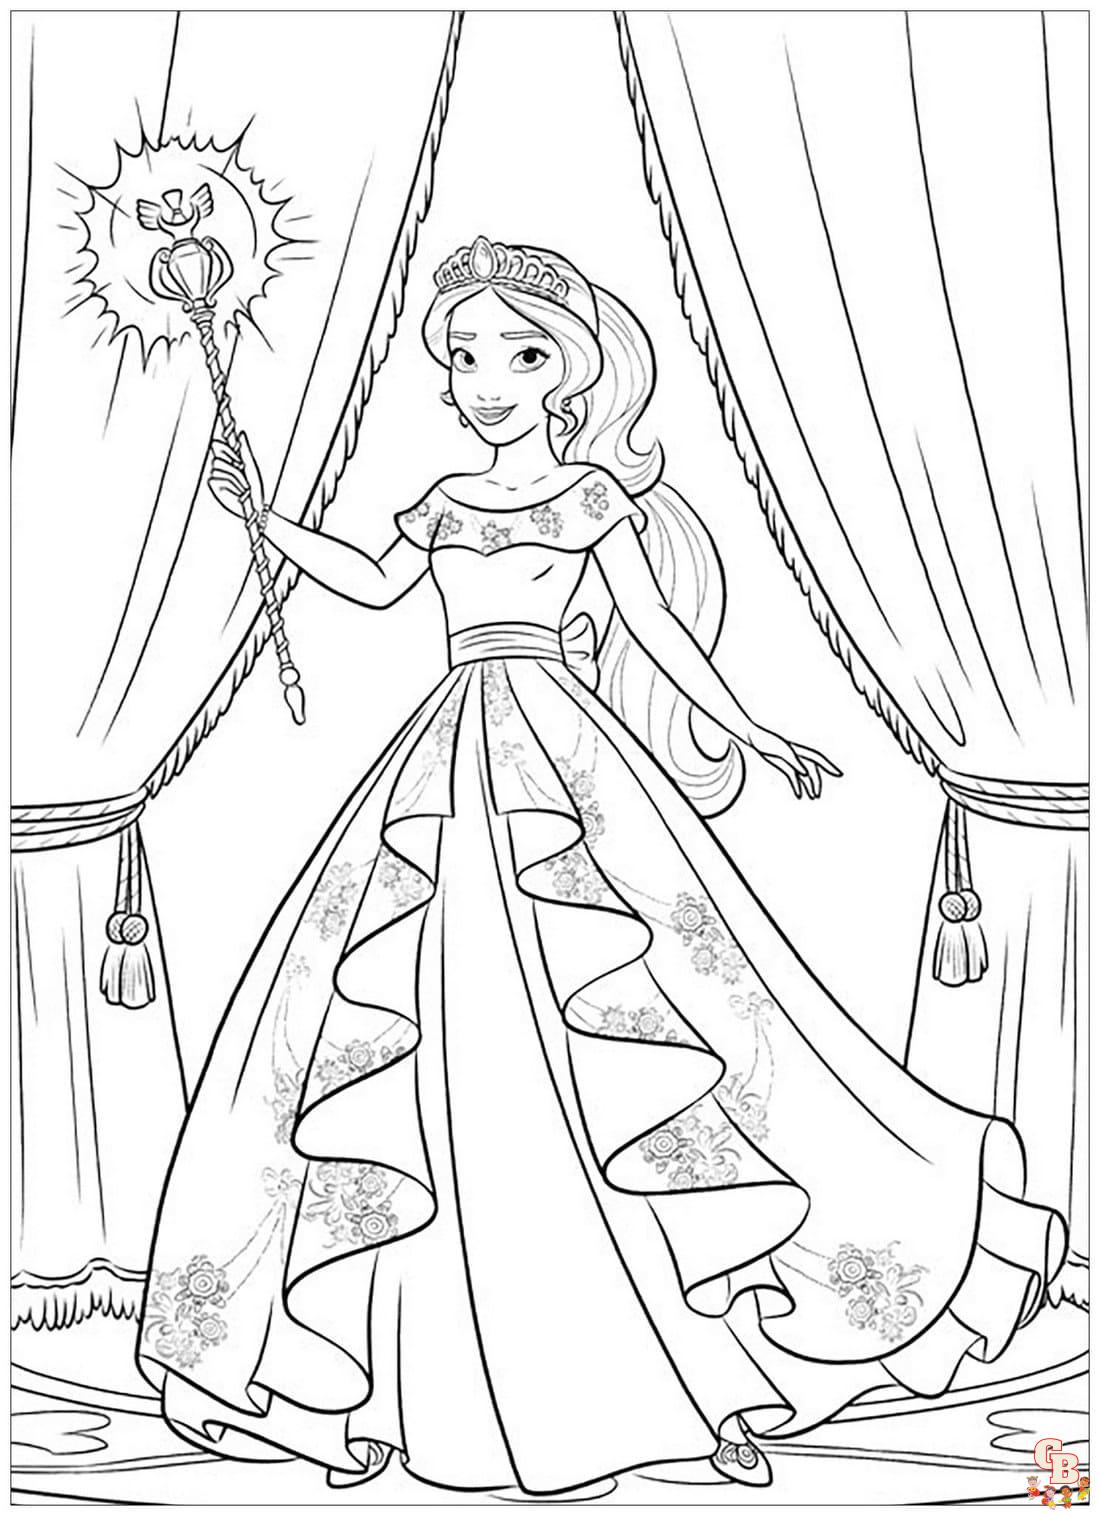 Prinzessin Elena mit Skylar ausmalbilder zum ausdrucken 2